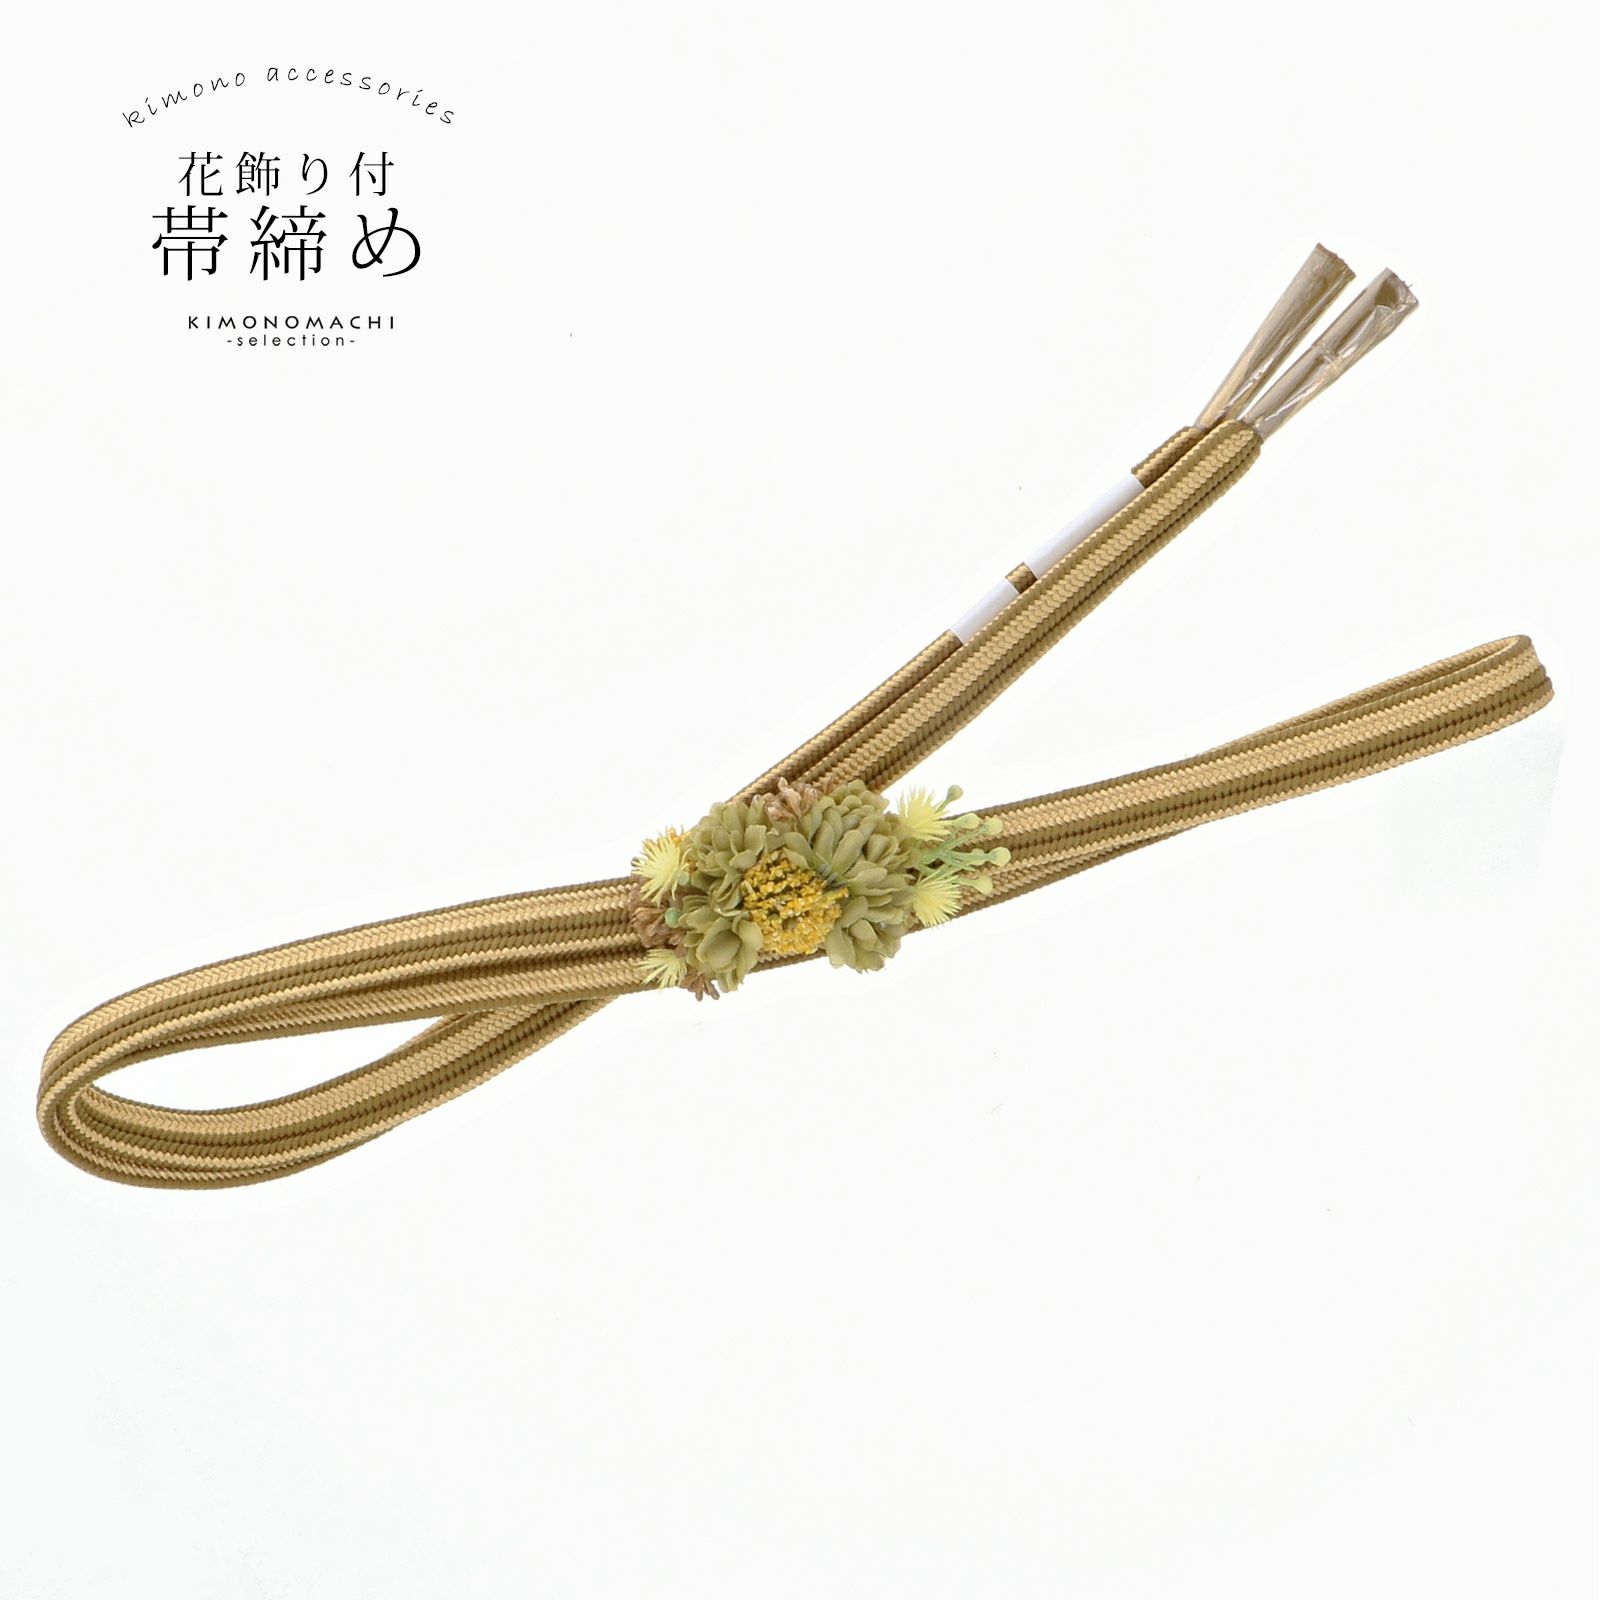 帯締め 振袖用 帯〆 正絹 「鶯色×金、黄緑色のコサージュ付き」 日本 